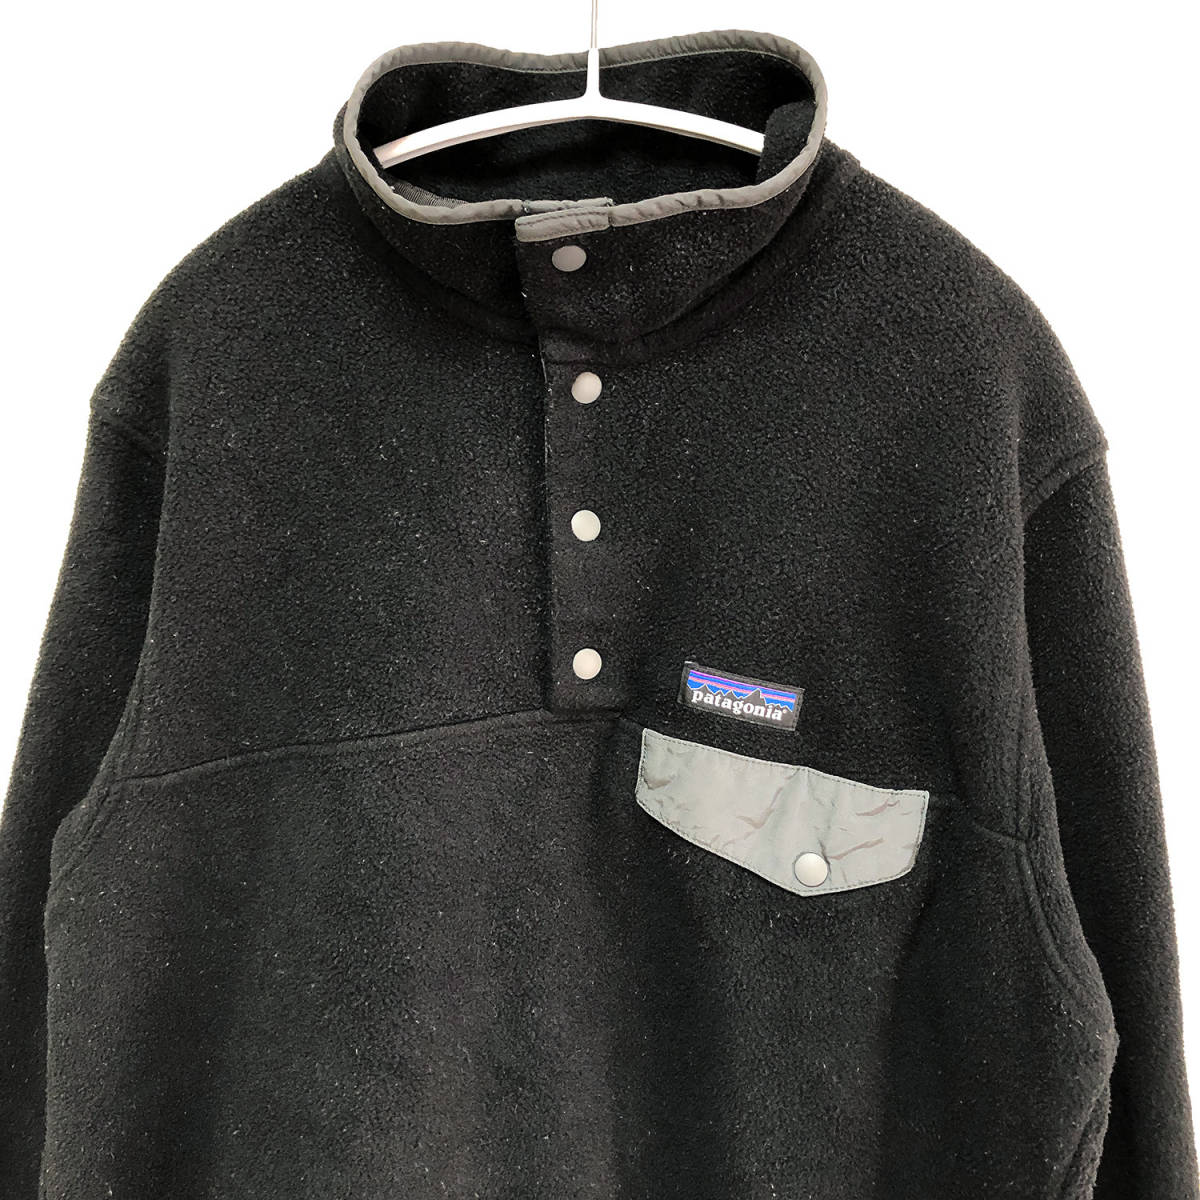 16年 パタゴニア アウトドア シンチラ スナップT フリースジャケット ブラック 黒色 メンズL patagonia 古着 AA0139_画像3